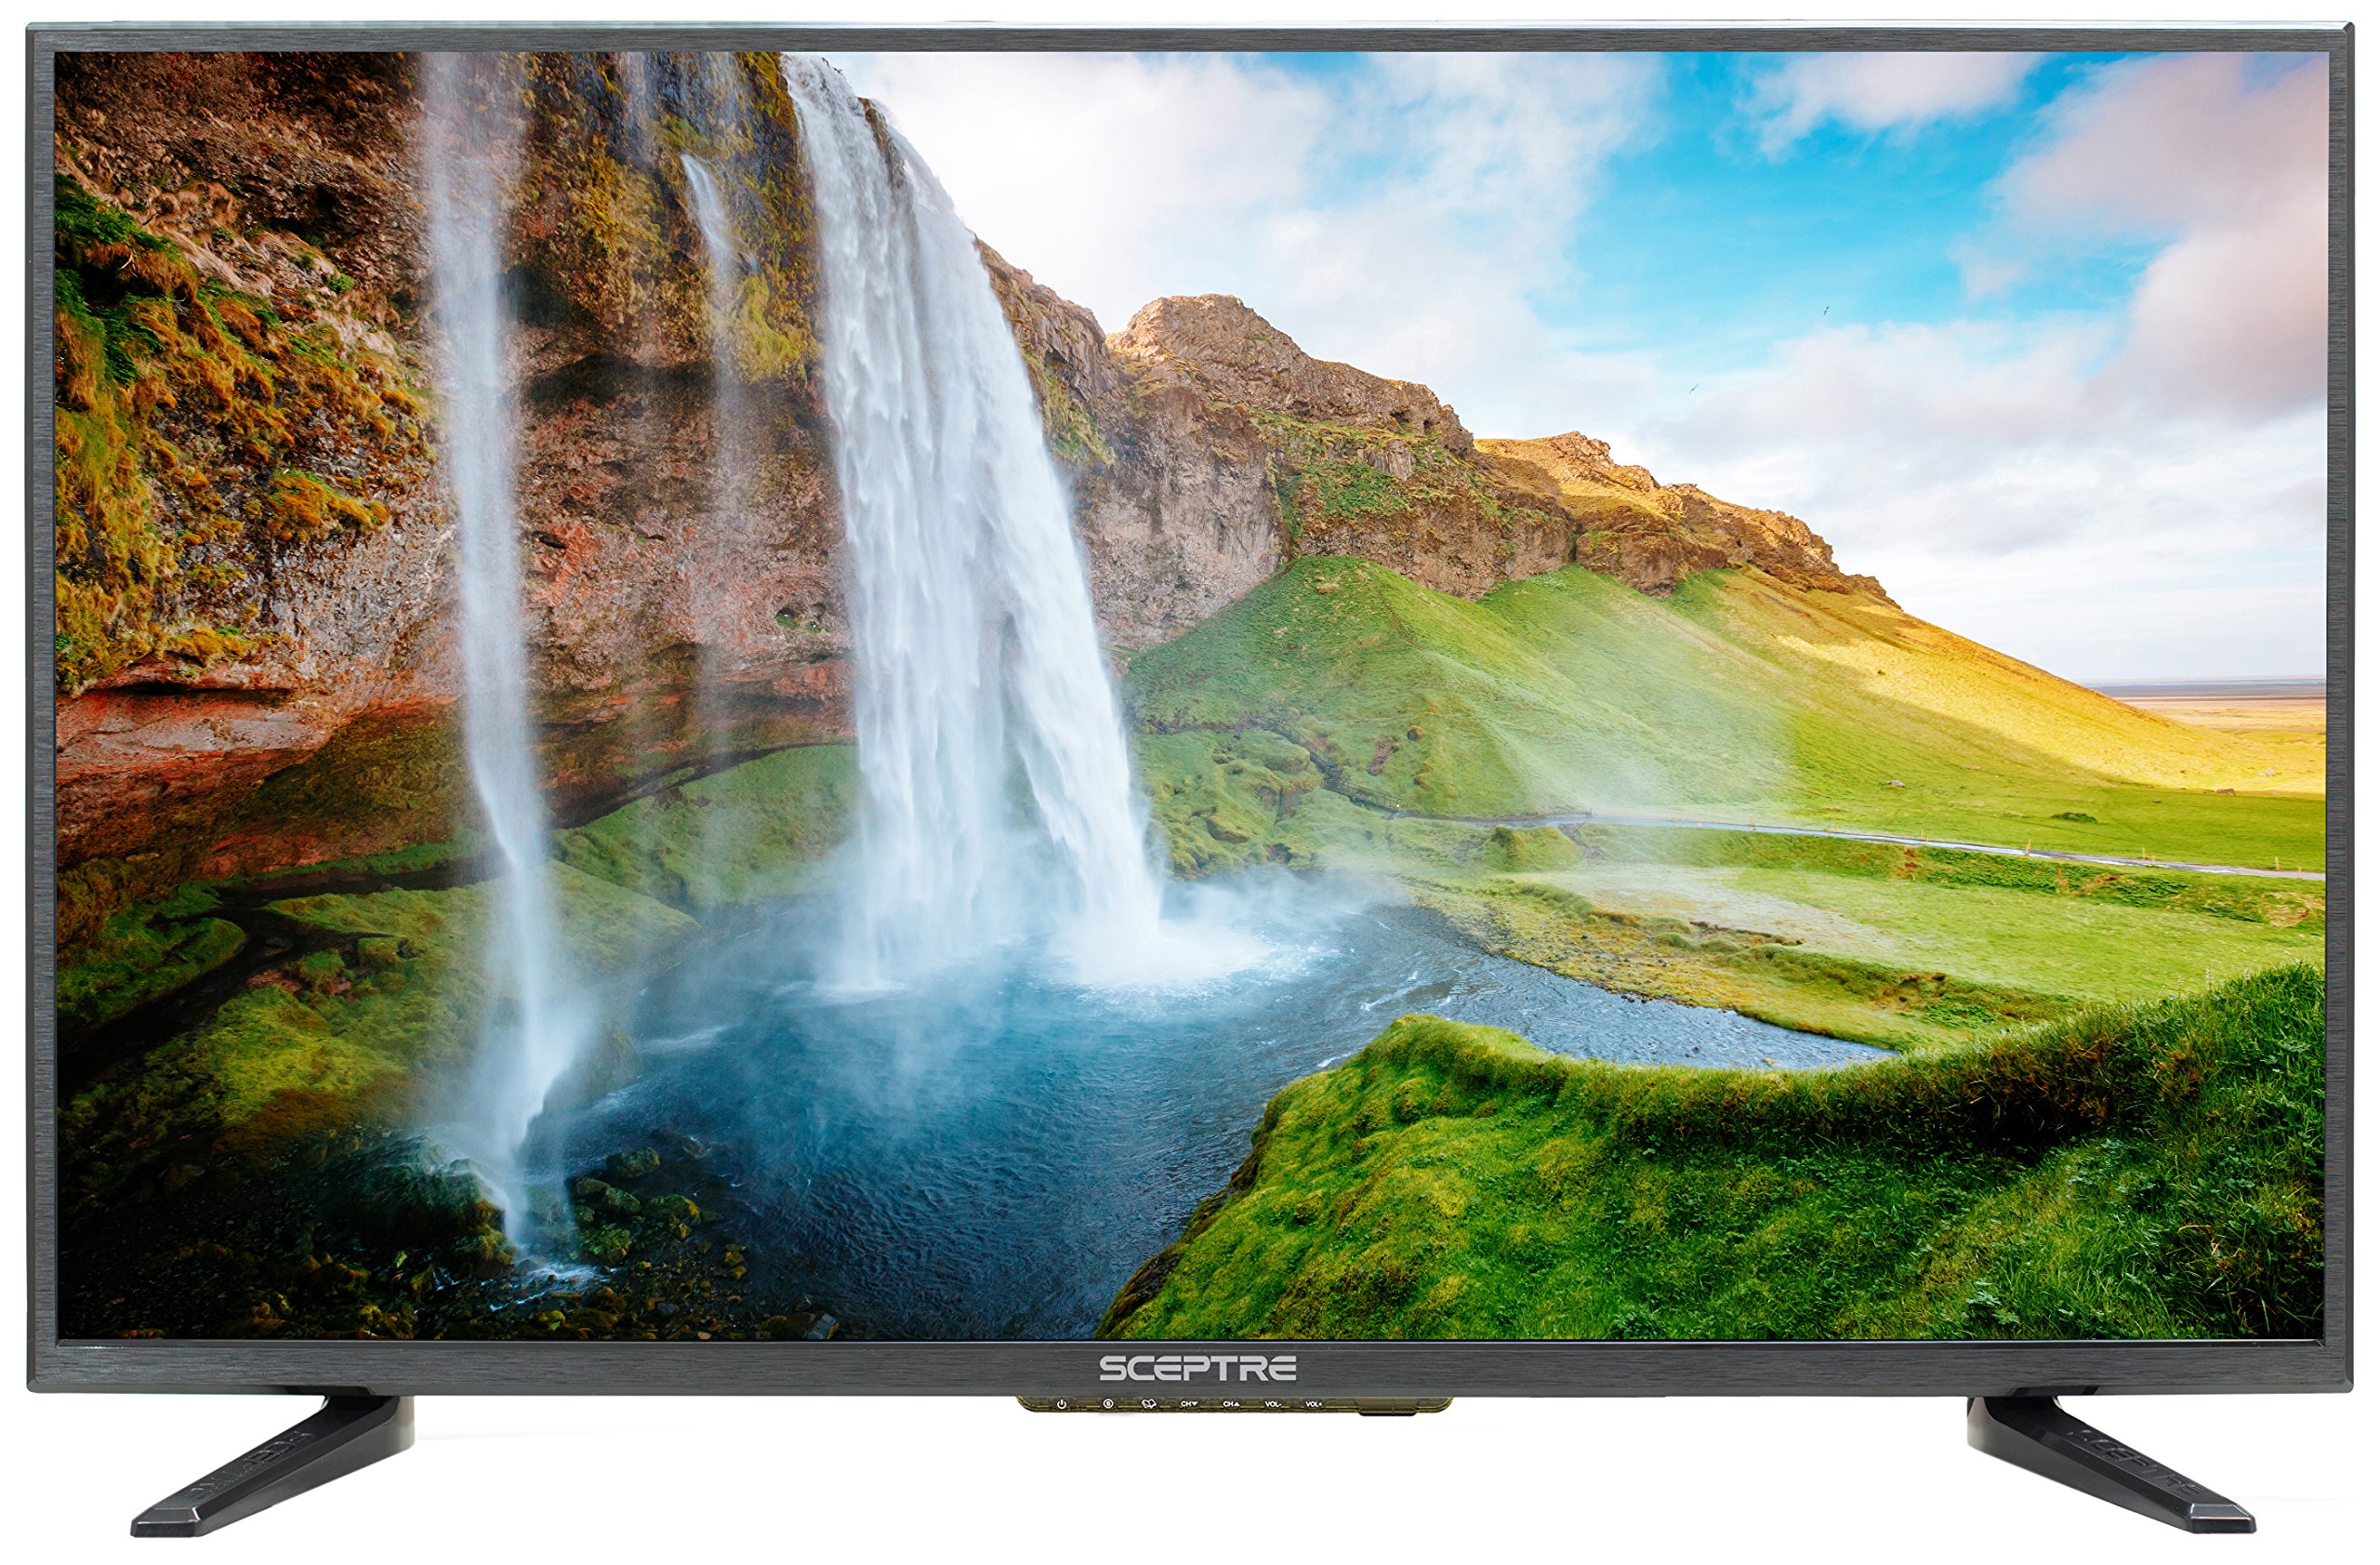 Sceptre 32-дюймовый LED-телевизор класса HD (720P) (X322BV-SR)